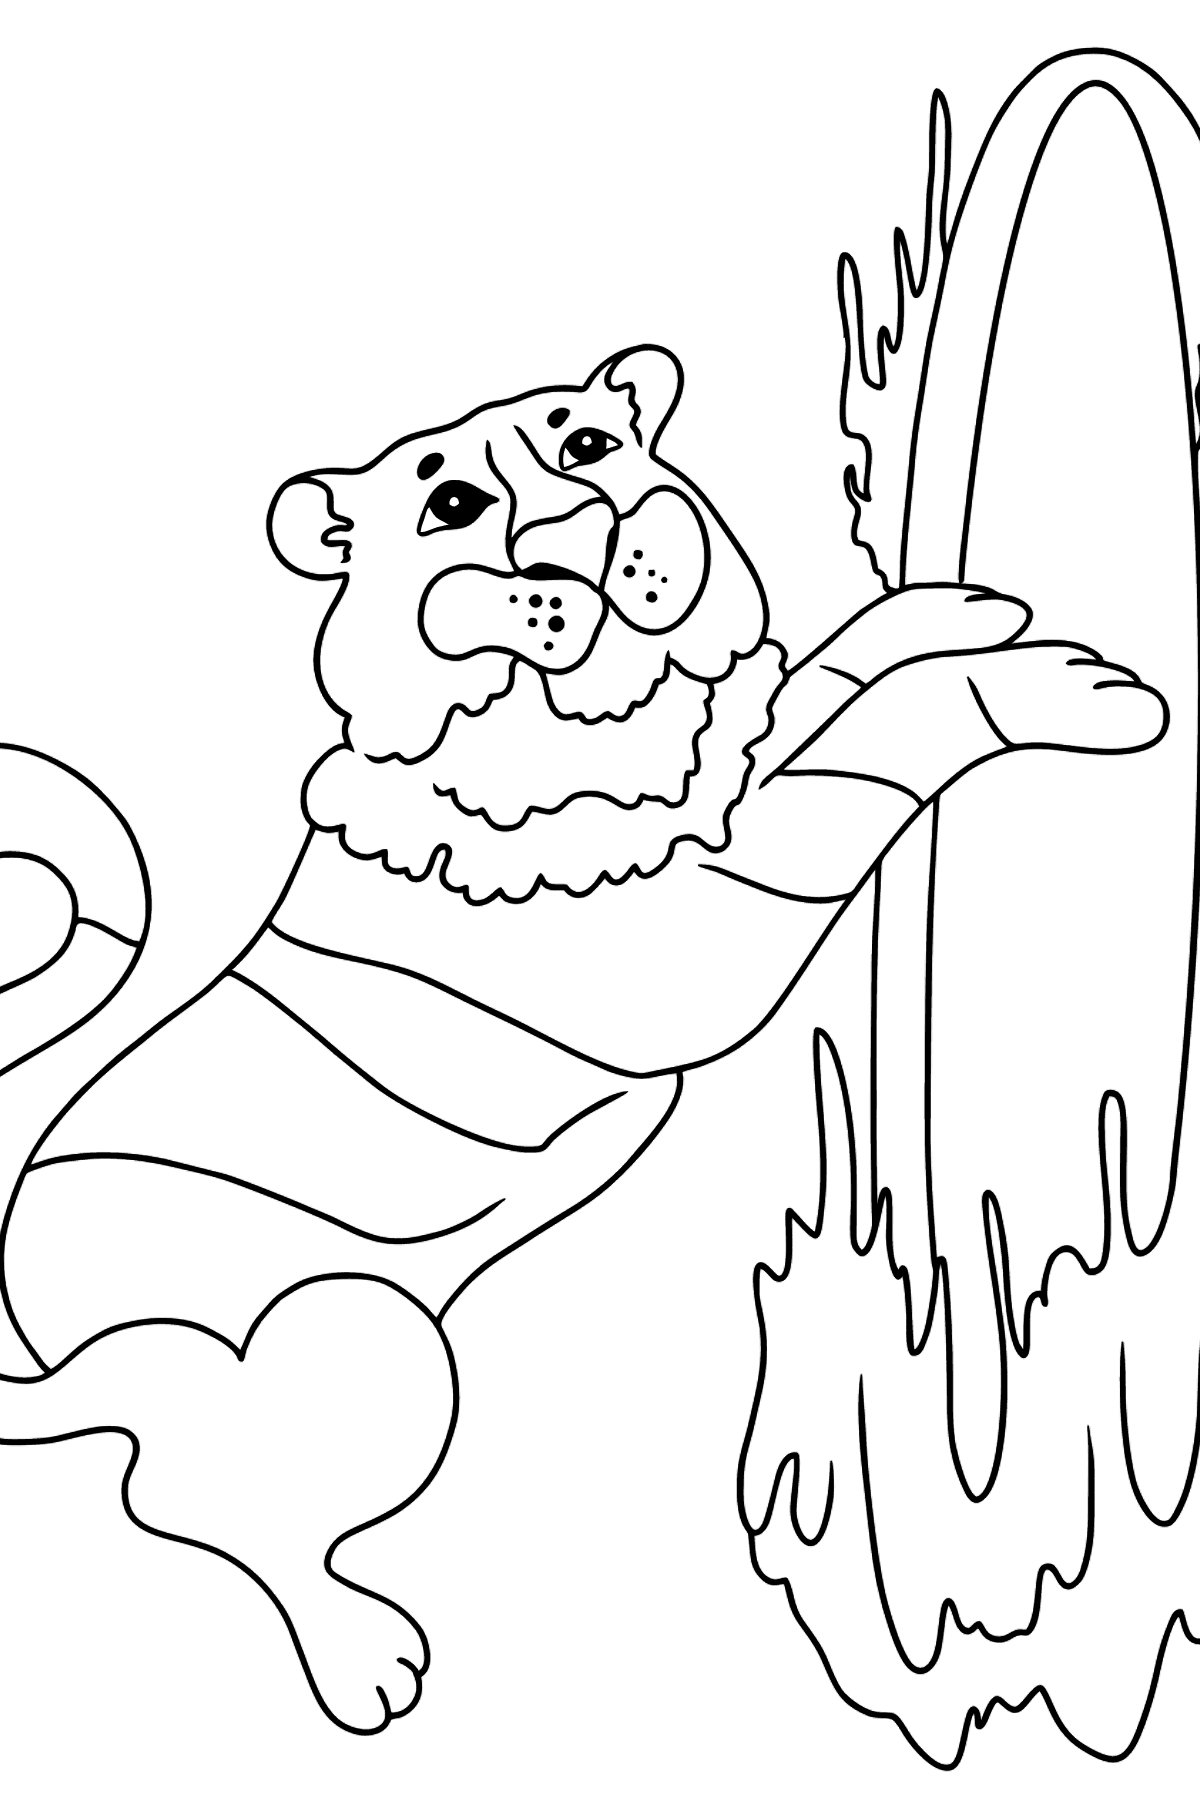 Tegning til fargelegging tiger på sirkus (enkelt) - Tegninger til fargelegging for barn